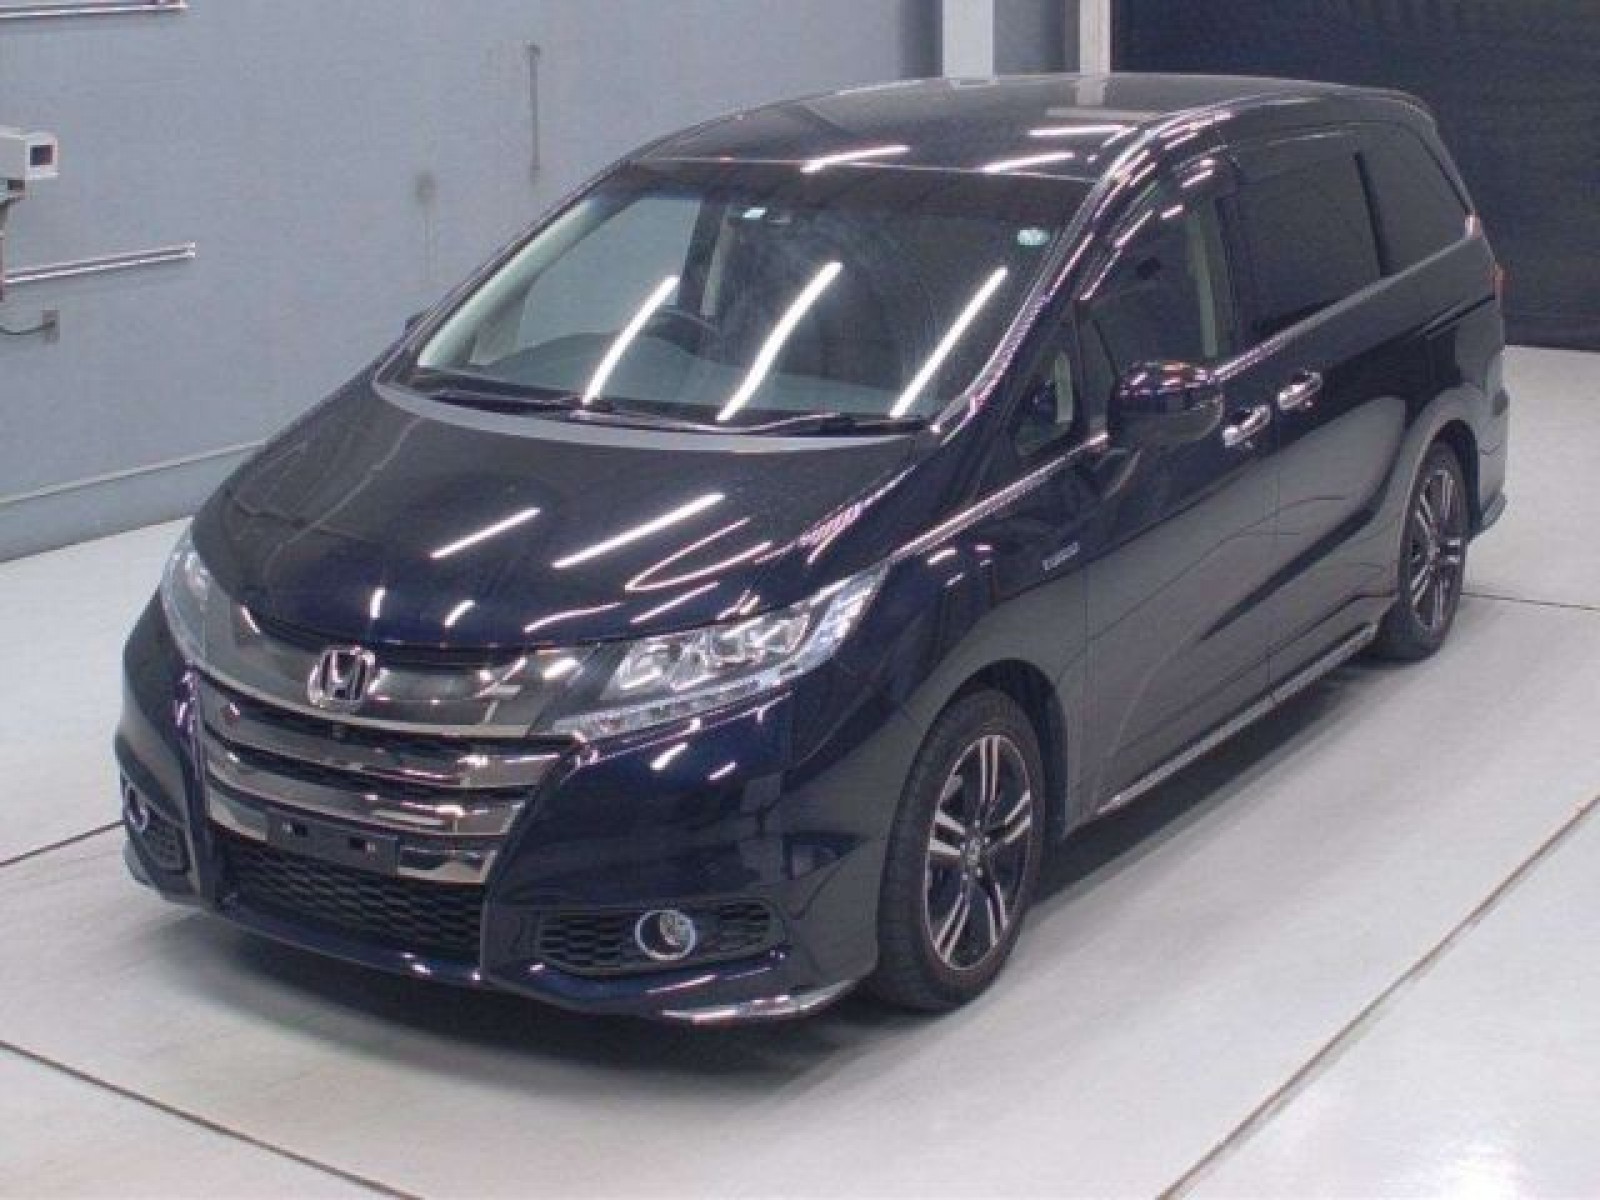 Honda Odissey Hybrid 2016